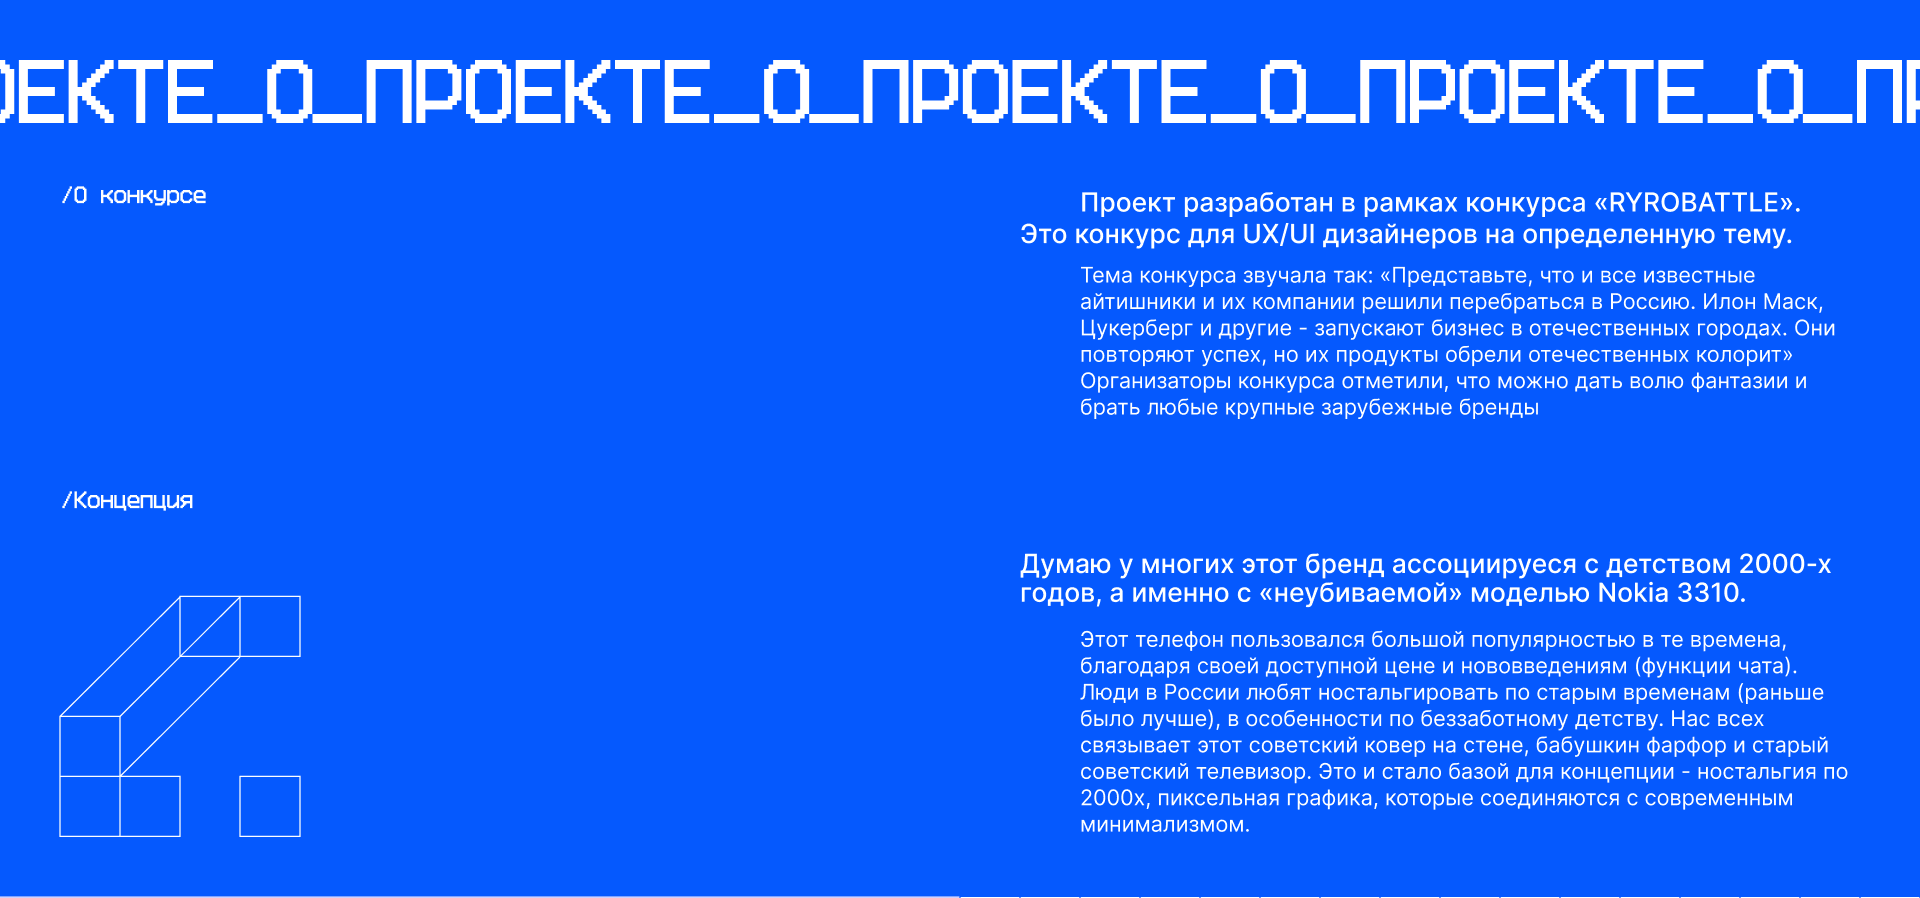 Nokia на русский лад | PYROBATTLE — Изображение №2 — Интерфейсы, Графика на Dprofile